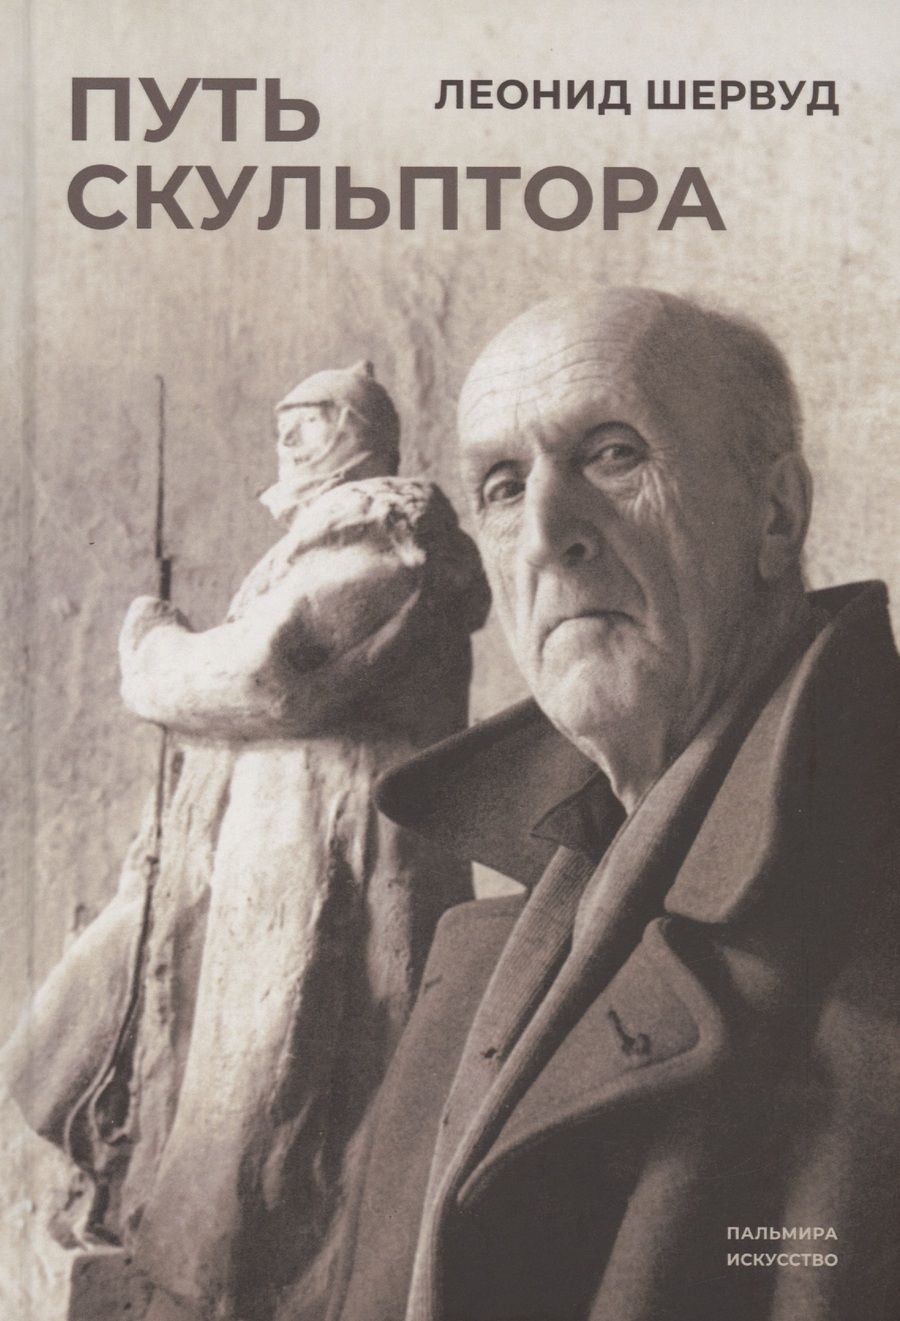 Обложка книги "Шервуд: Путь скульптора"